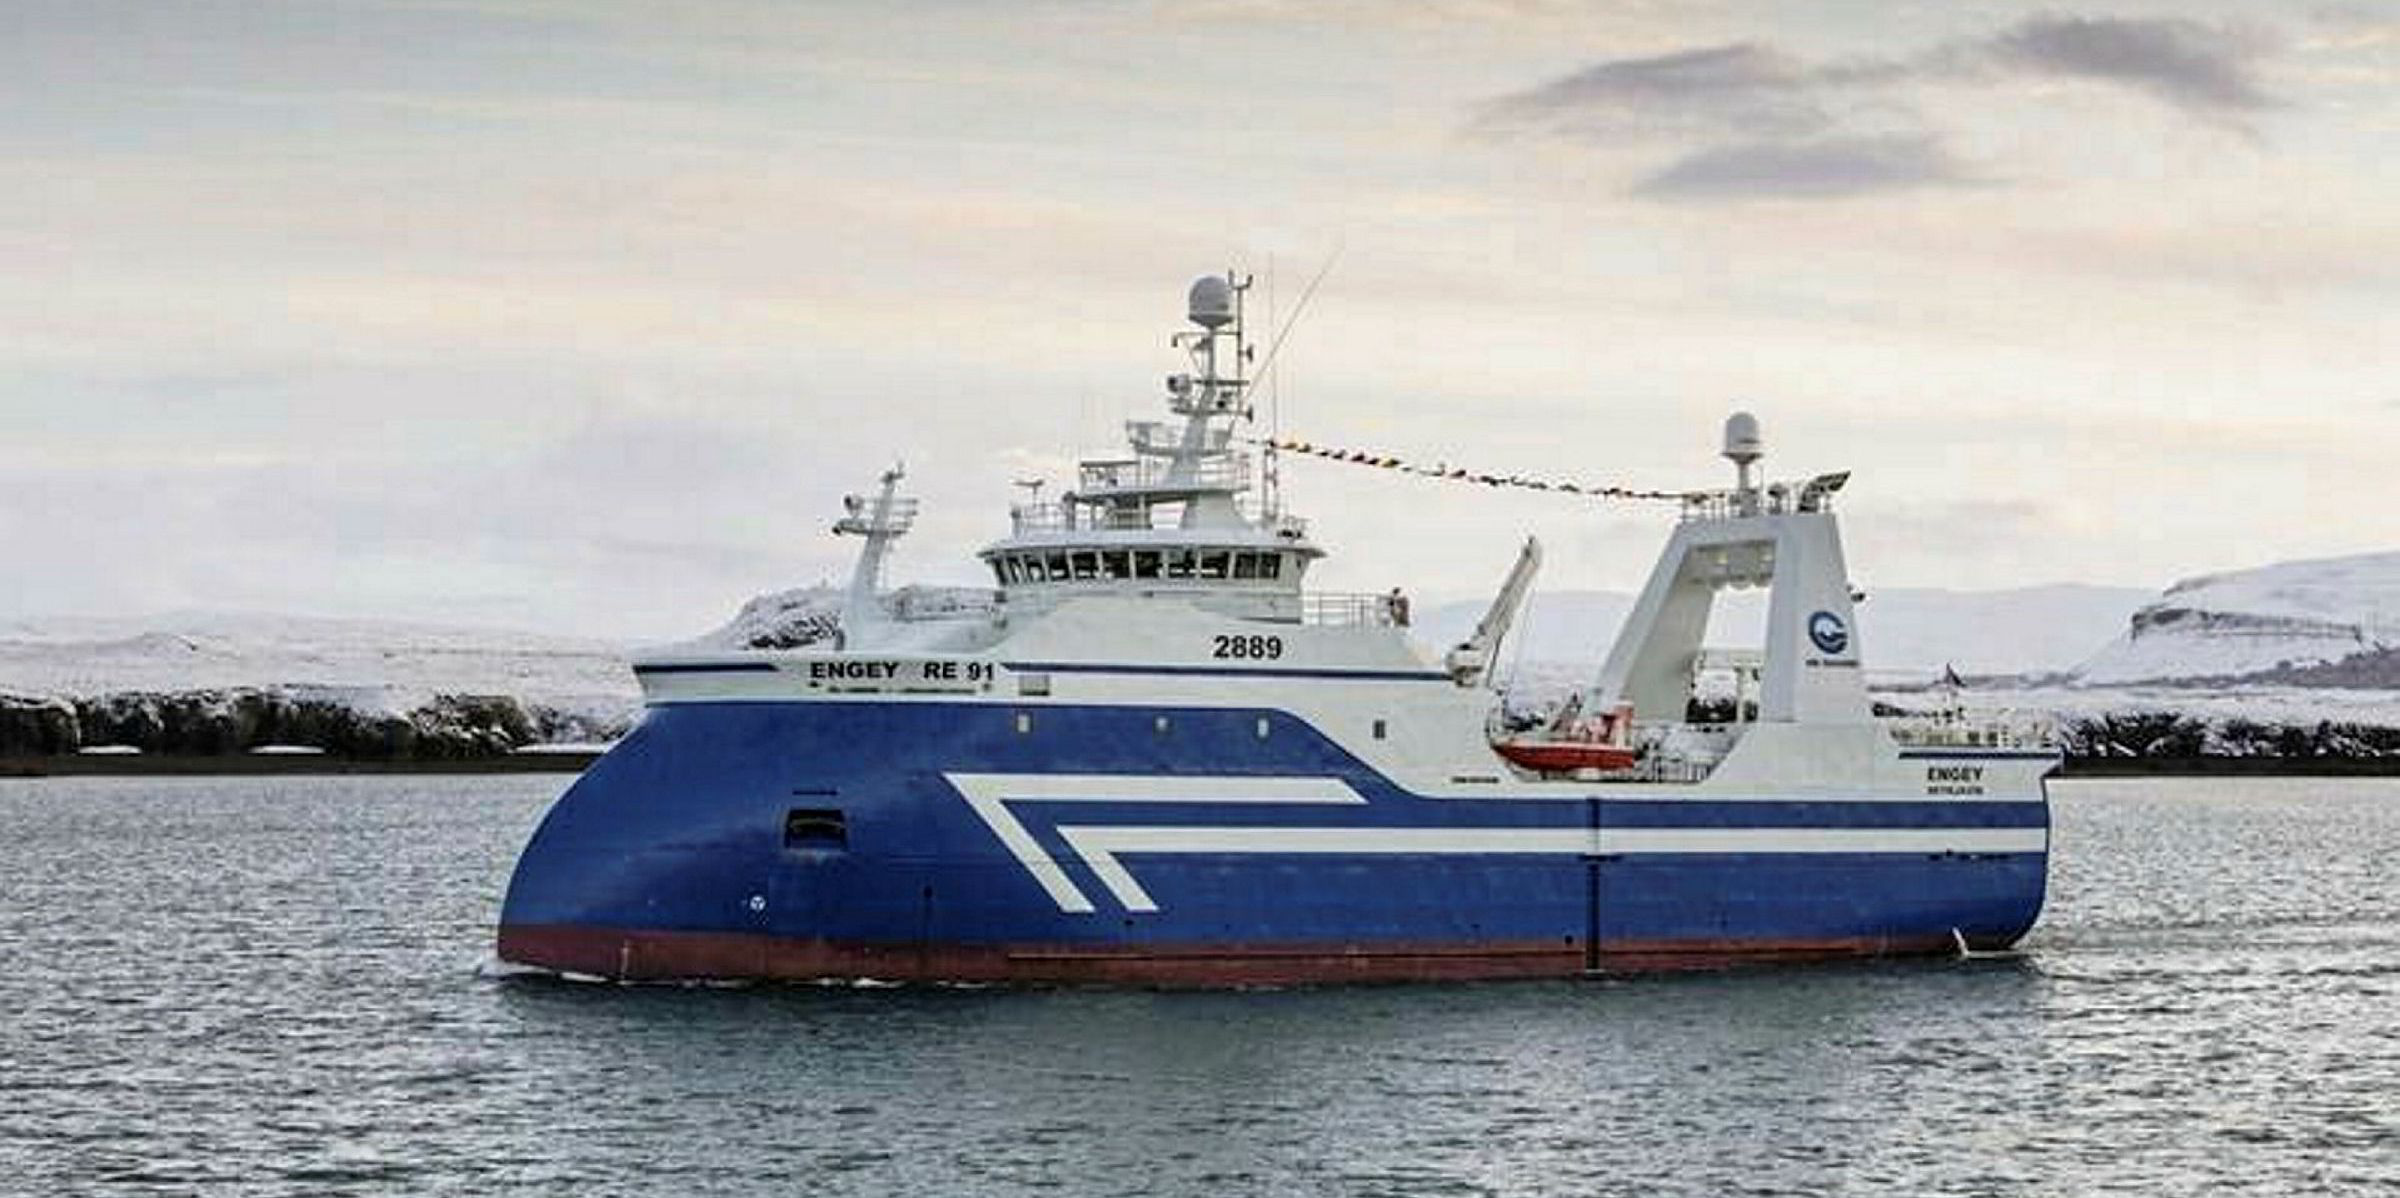 HB Grandi sells trawler to Russia's Murmansk Trawl Fleet